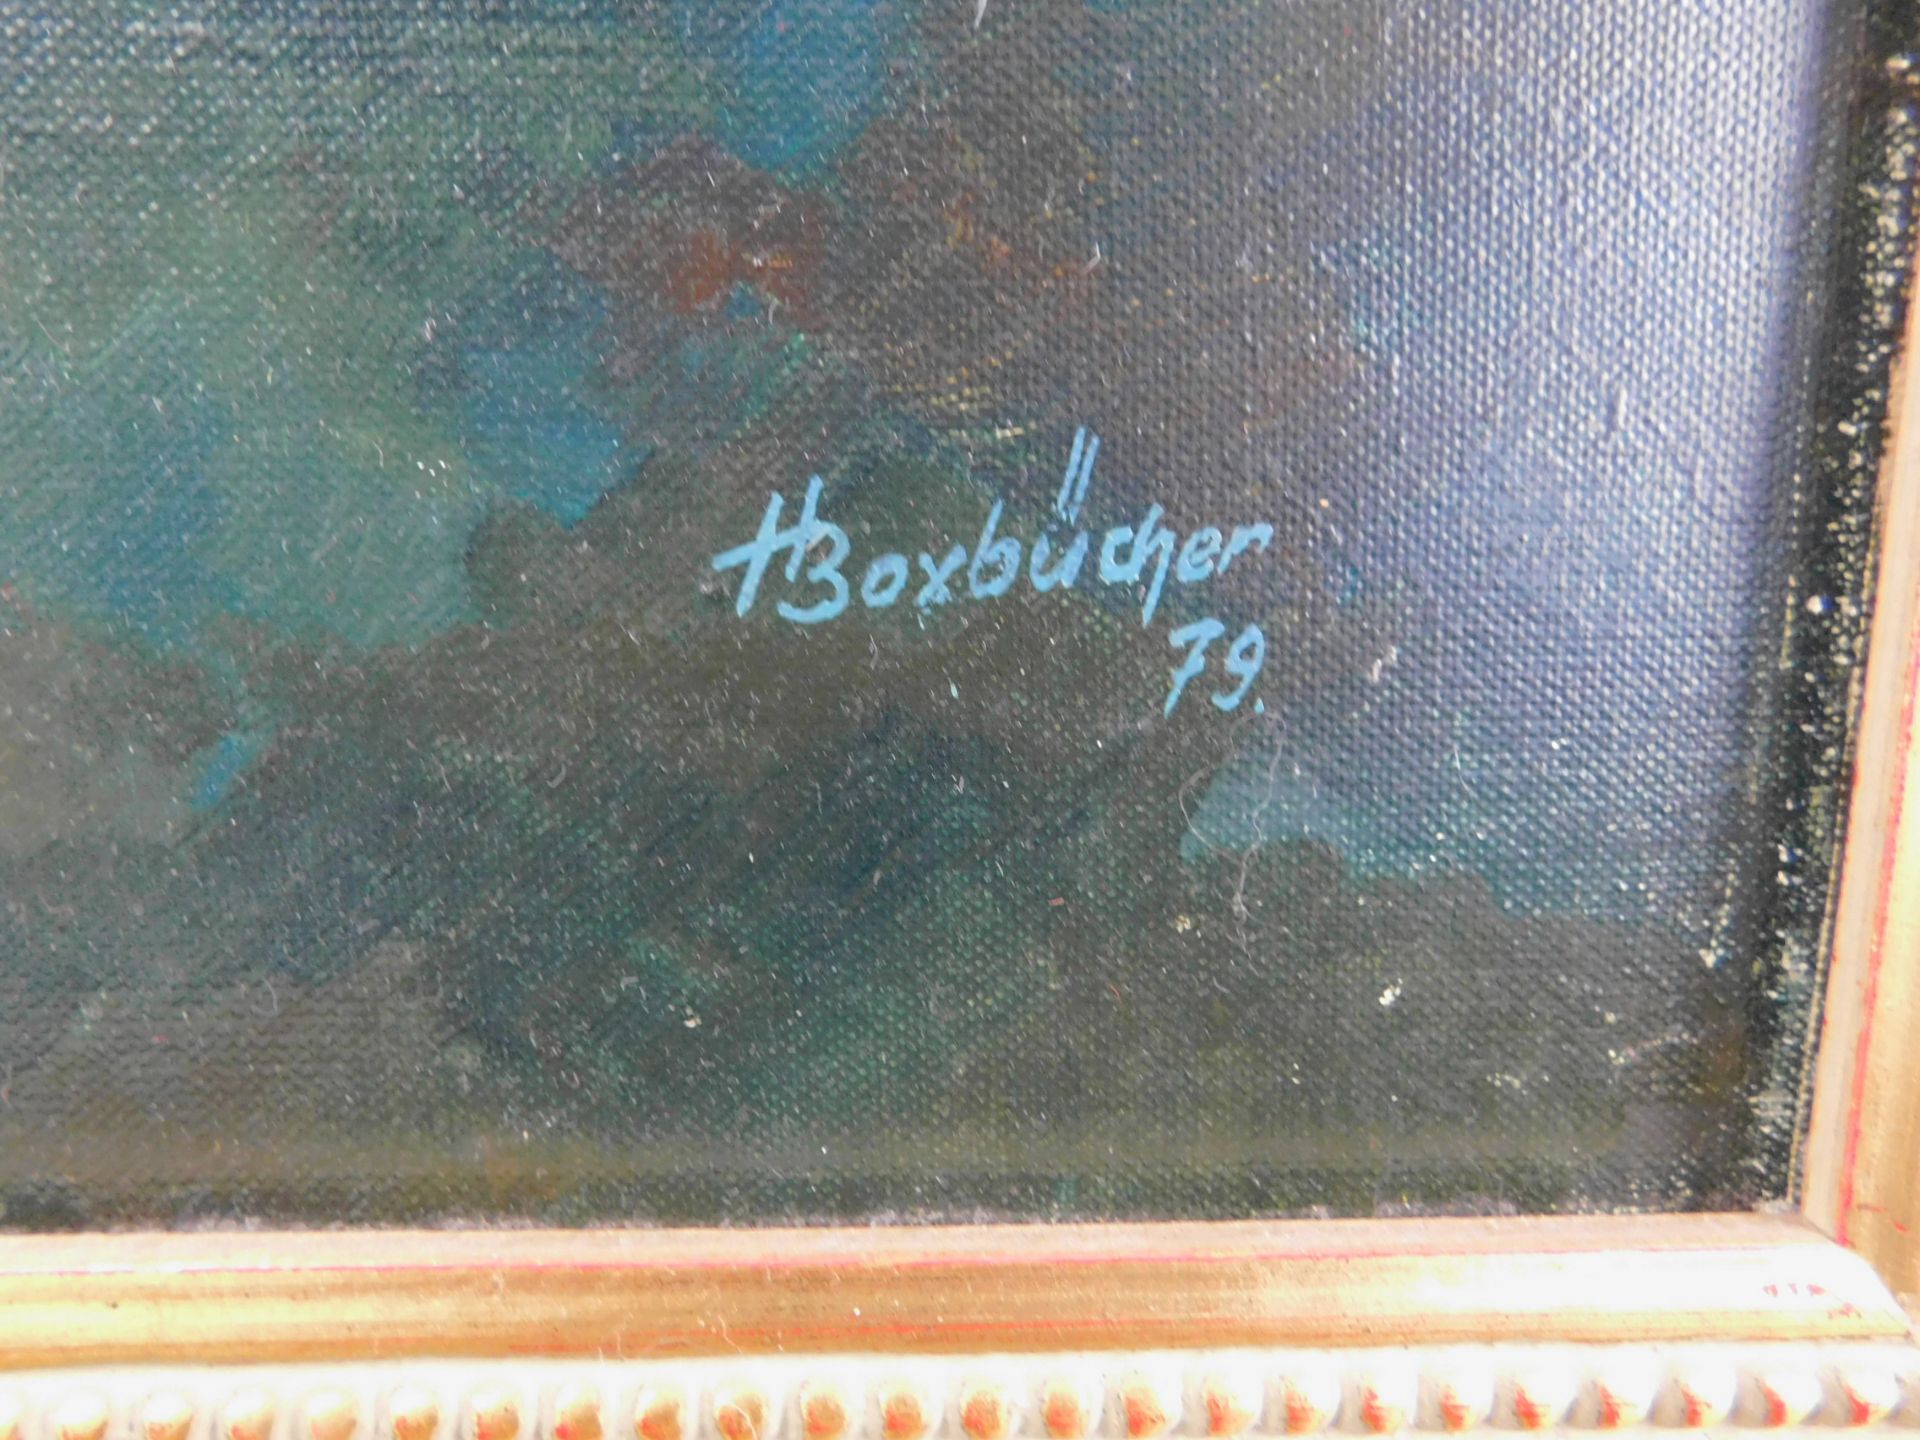 H.Boxbücher, Mystische Szene, sig. u. datiert (19)79 unten rechts,, Acryl auf Leinwand - Bild 3 aus 4